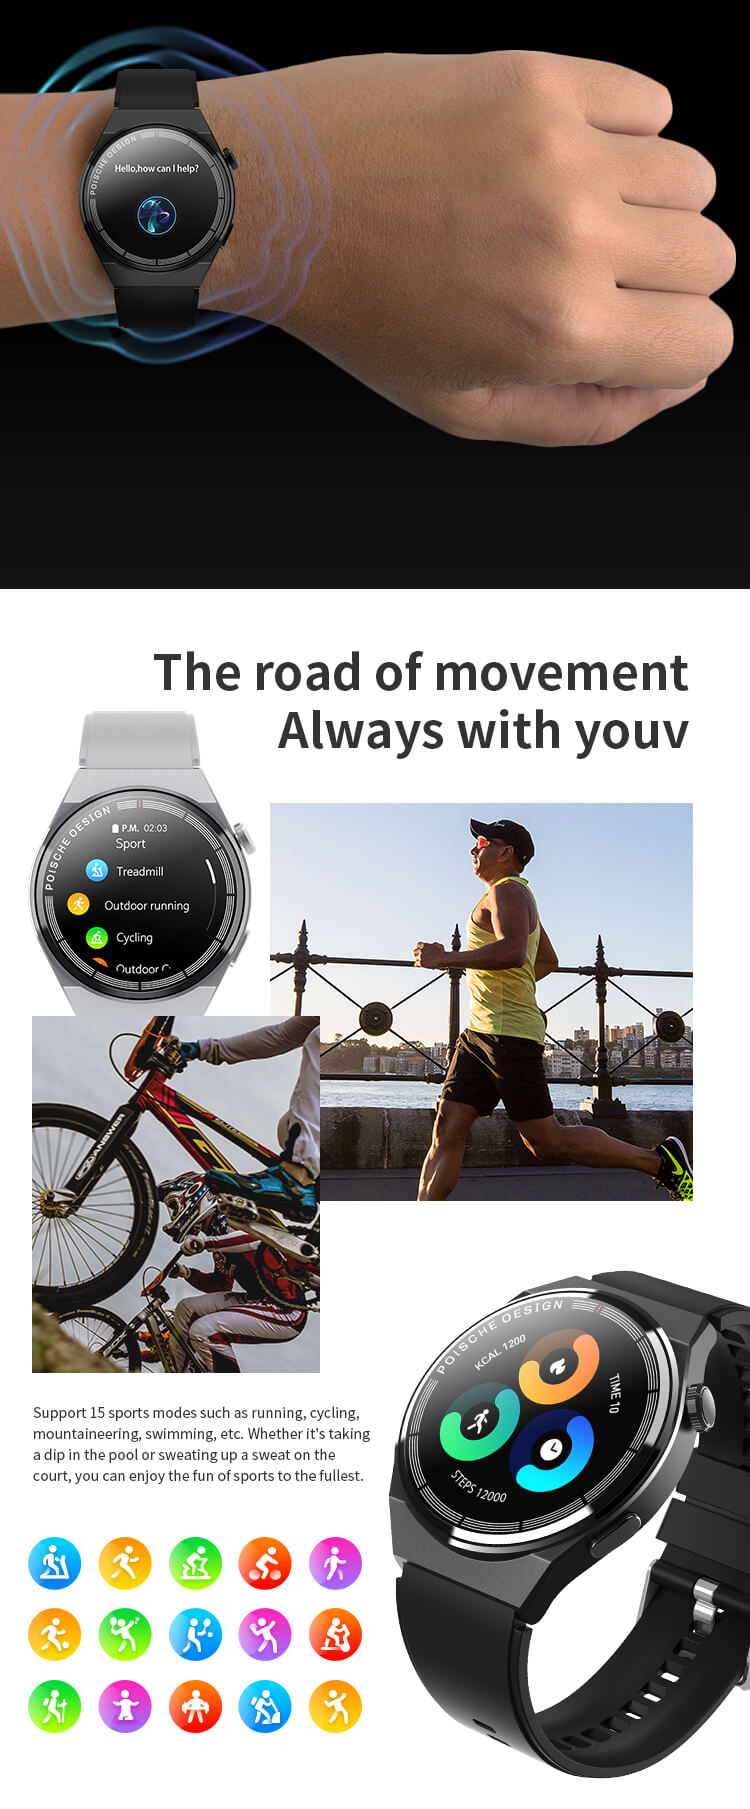 GT3 MAX Smartwatch mit rundem Bildschirm – Shenzhen Shengye Technology Co., Ltd